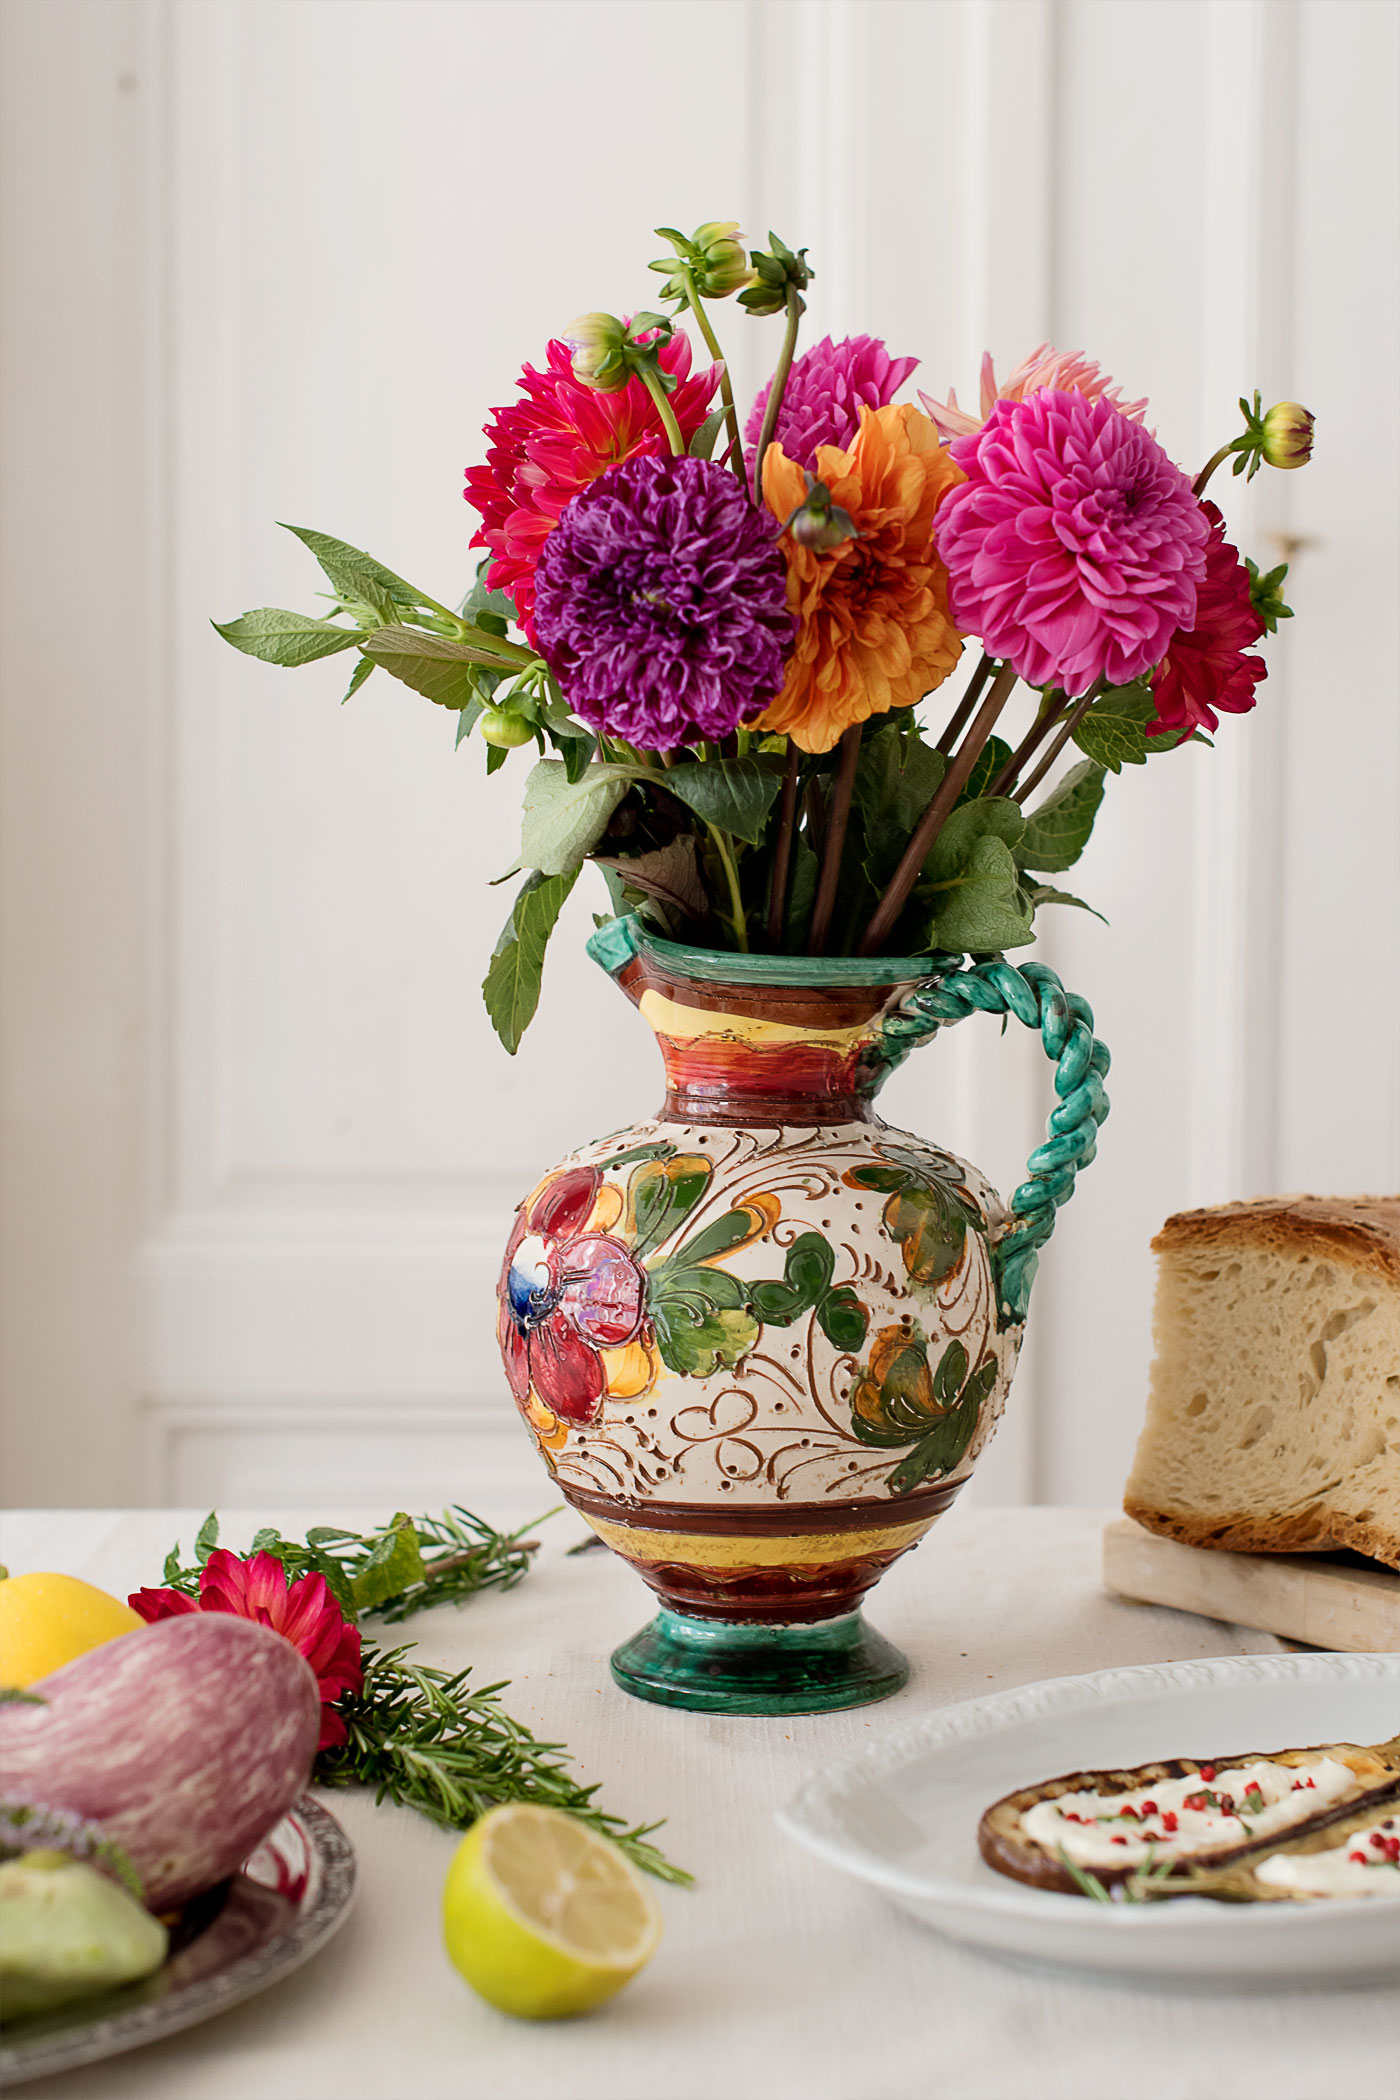 Rezeptbeitrag mit gegrillten Auberginen und Zucchinis mit einer Joghurtcreme und floraler Dekoration mit Dahlien.